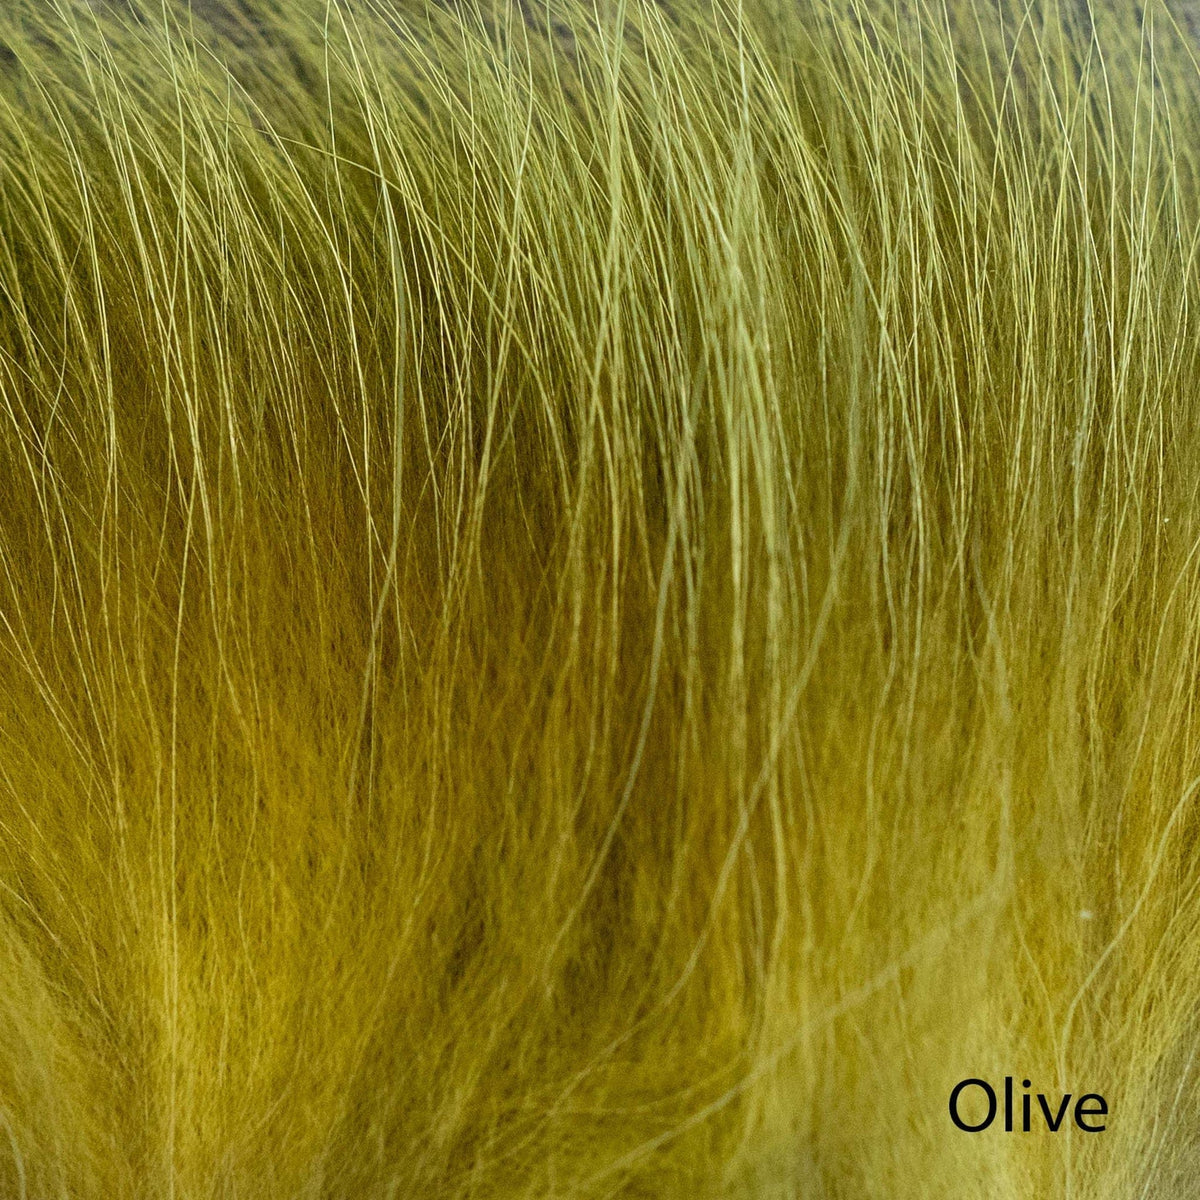 Finn Racoon Hair Olive